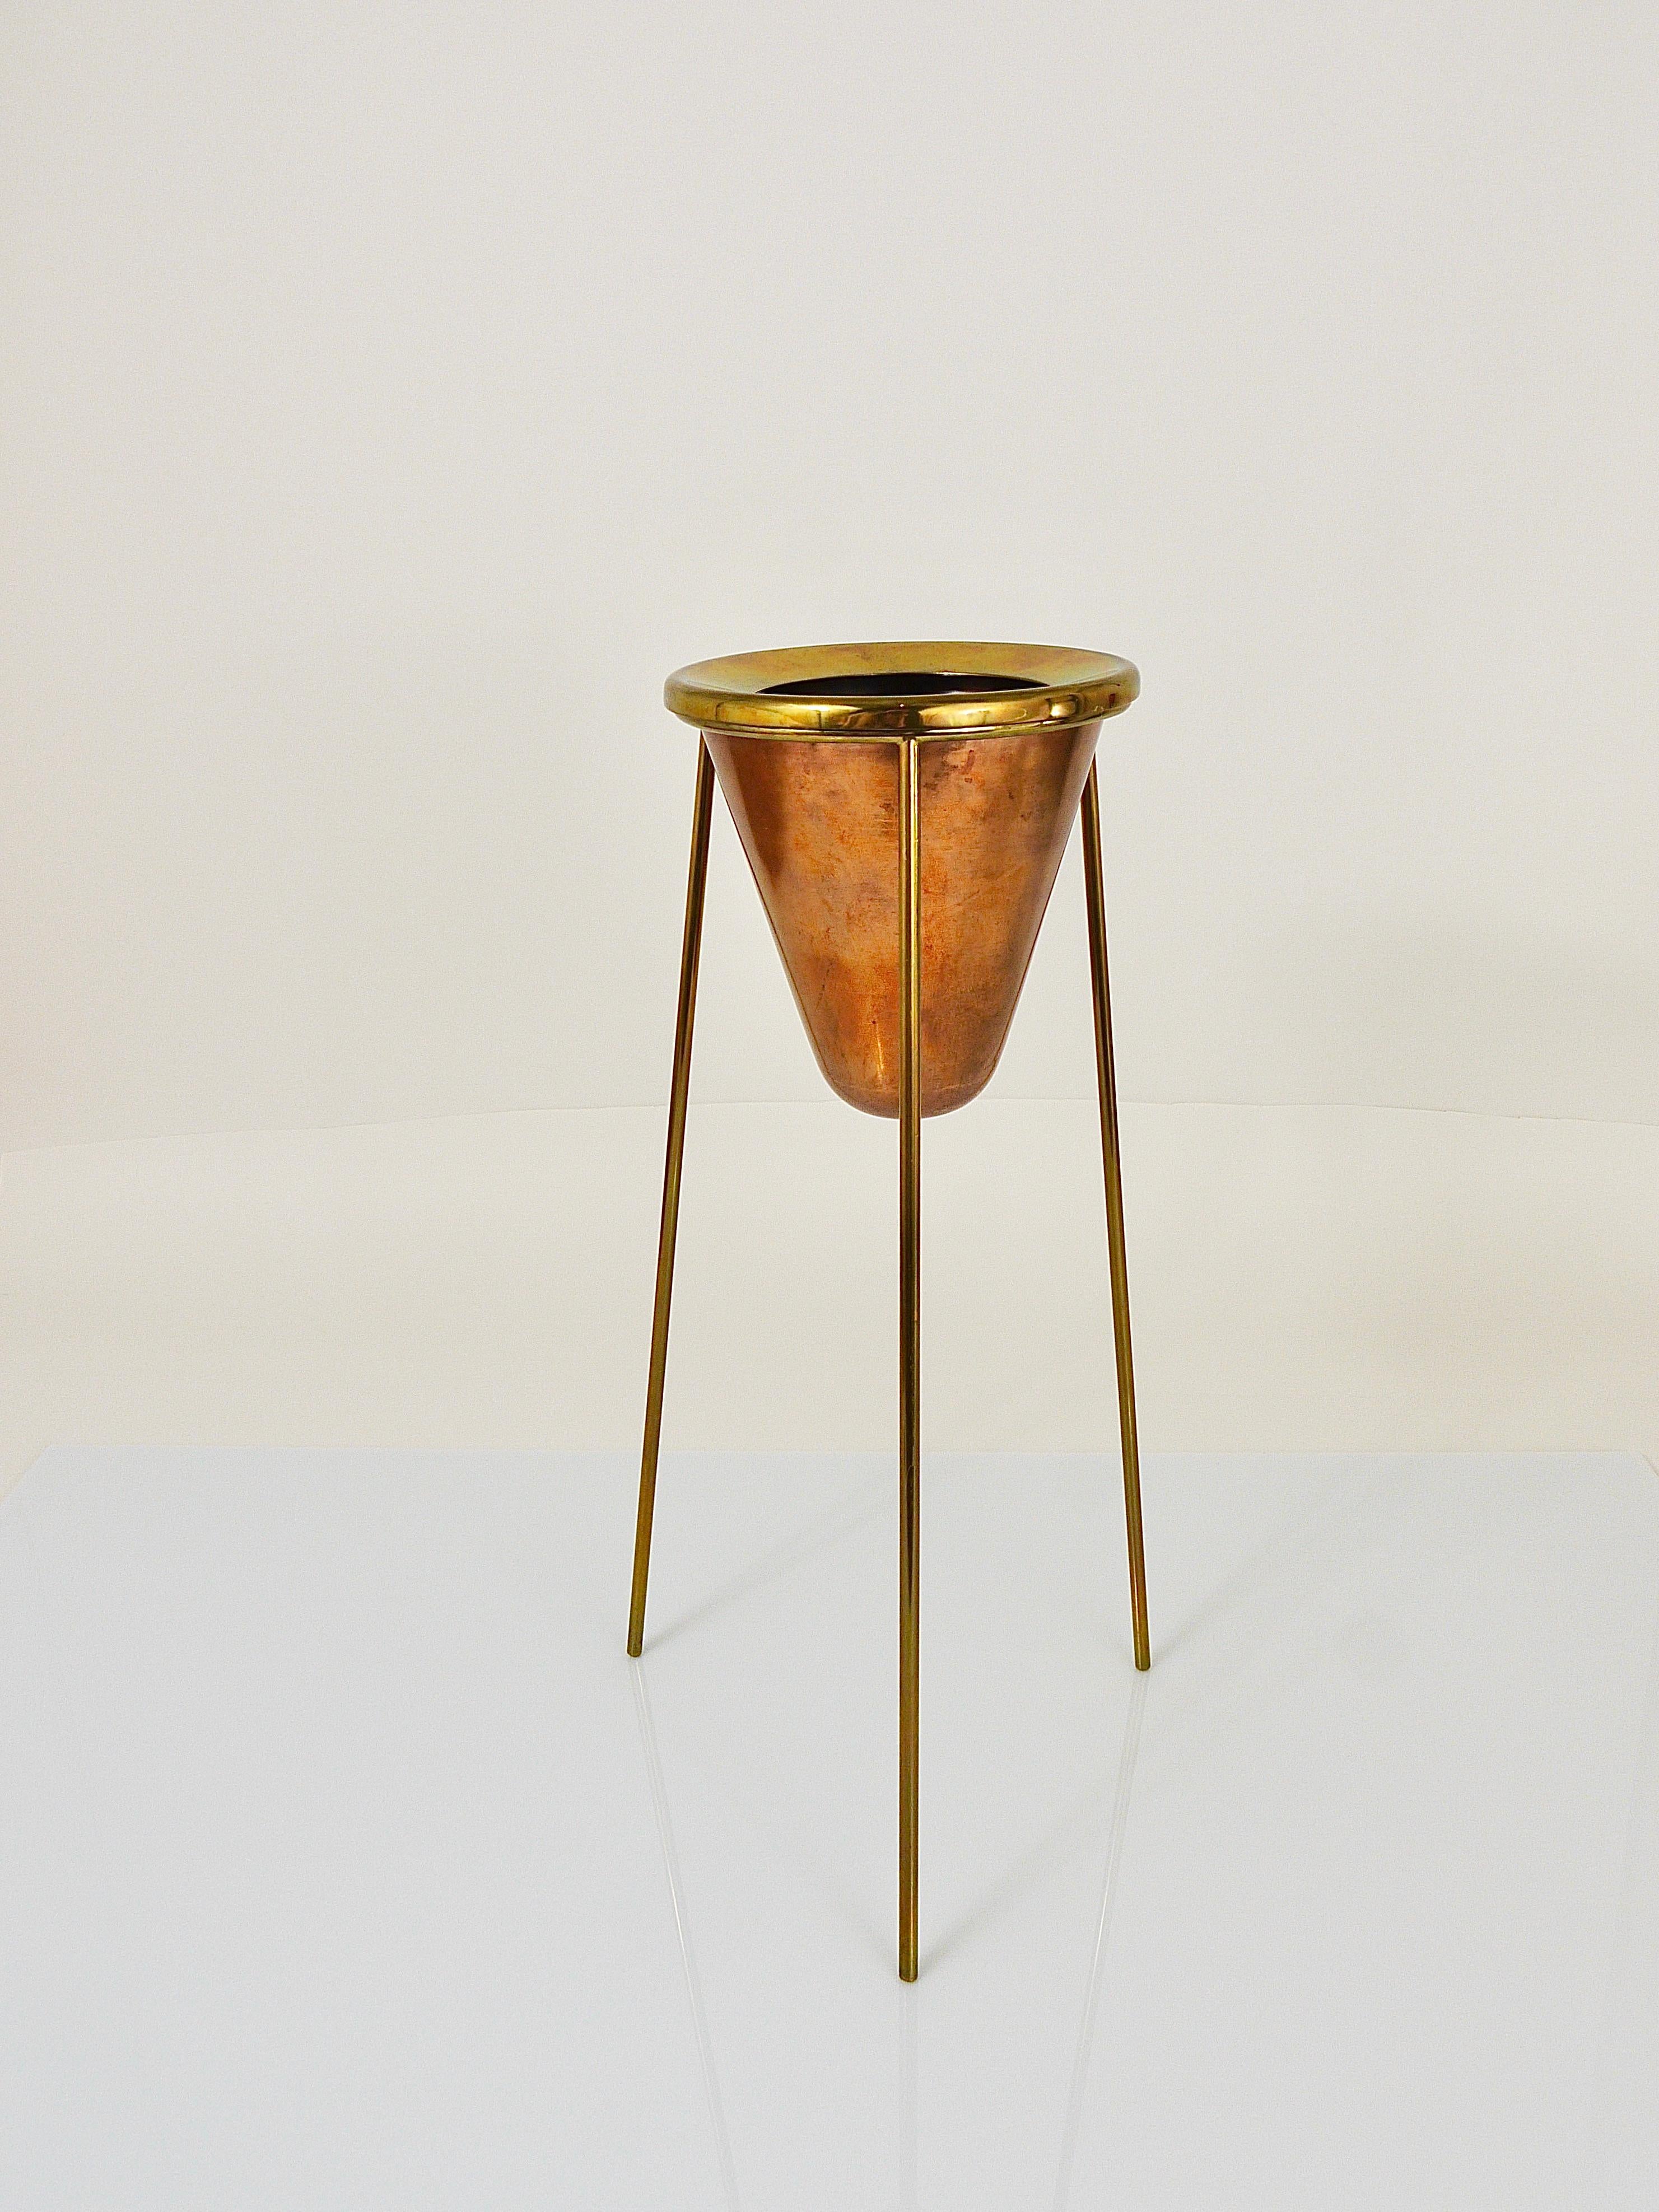 20th Century Rare Carl Aubock Copper & Brass Tripod Floor Ashtray, Austria, 1950s For Sale